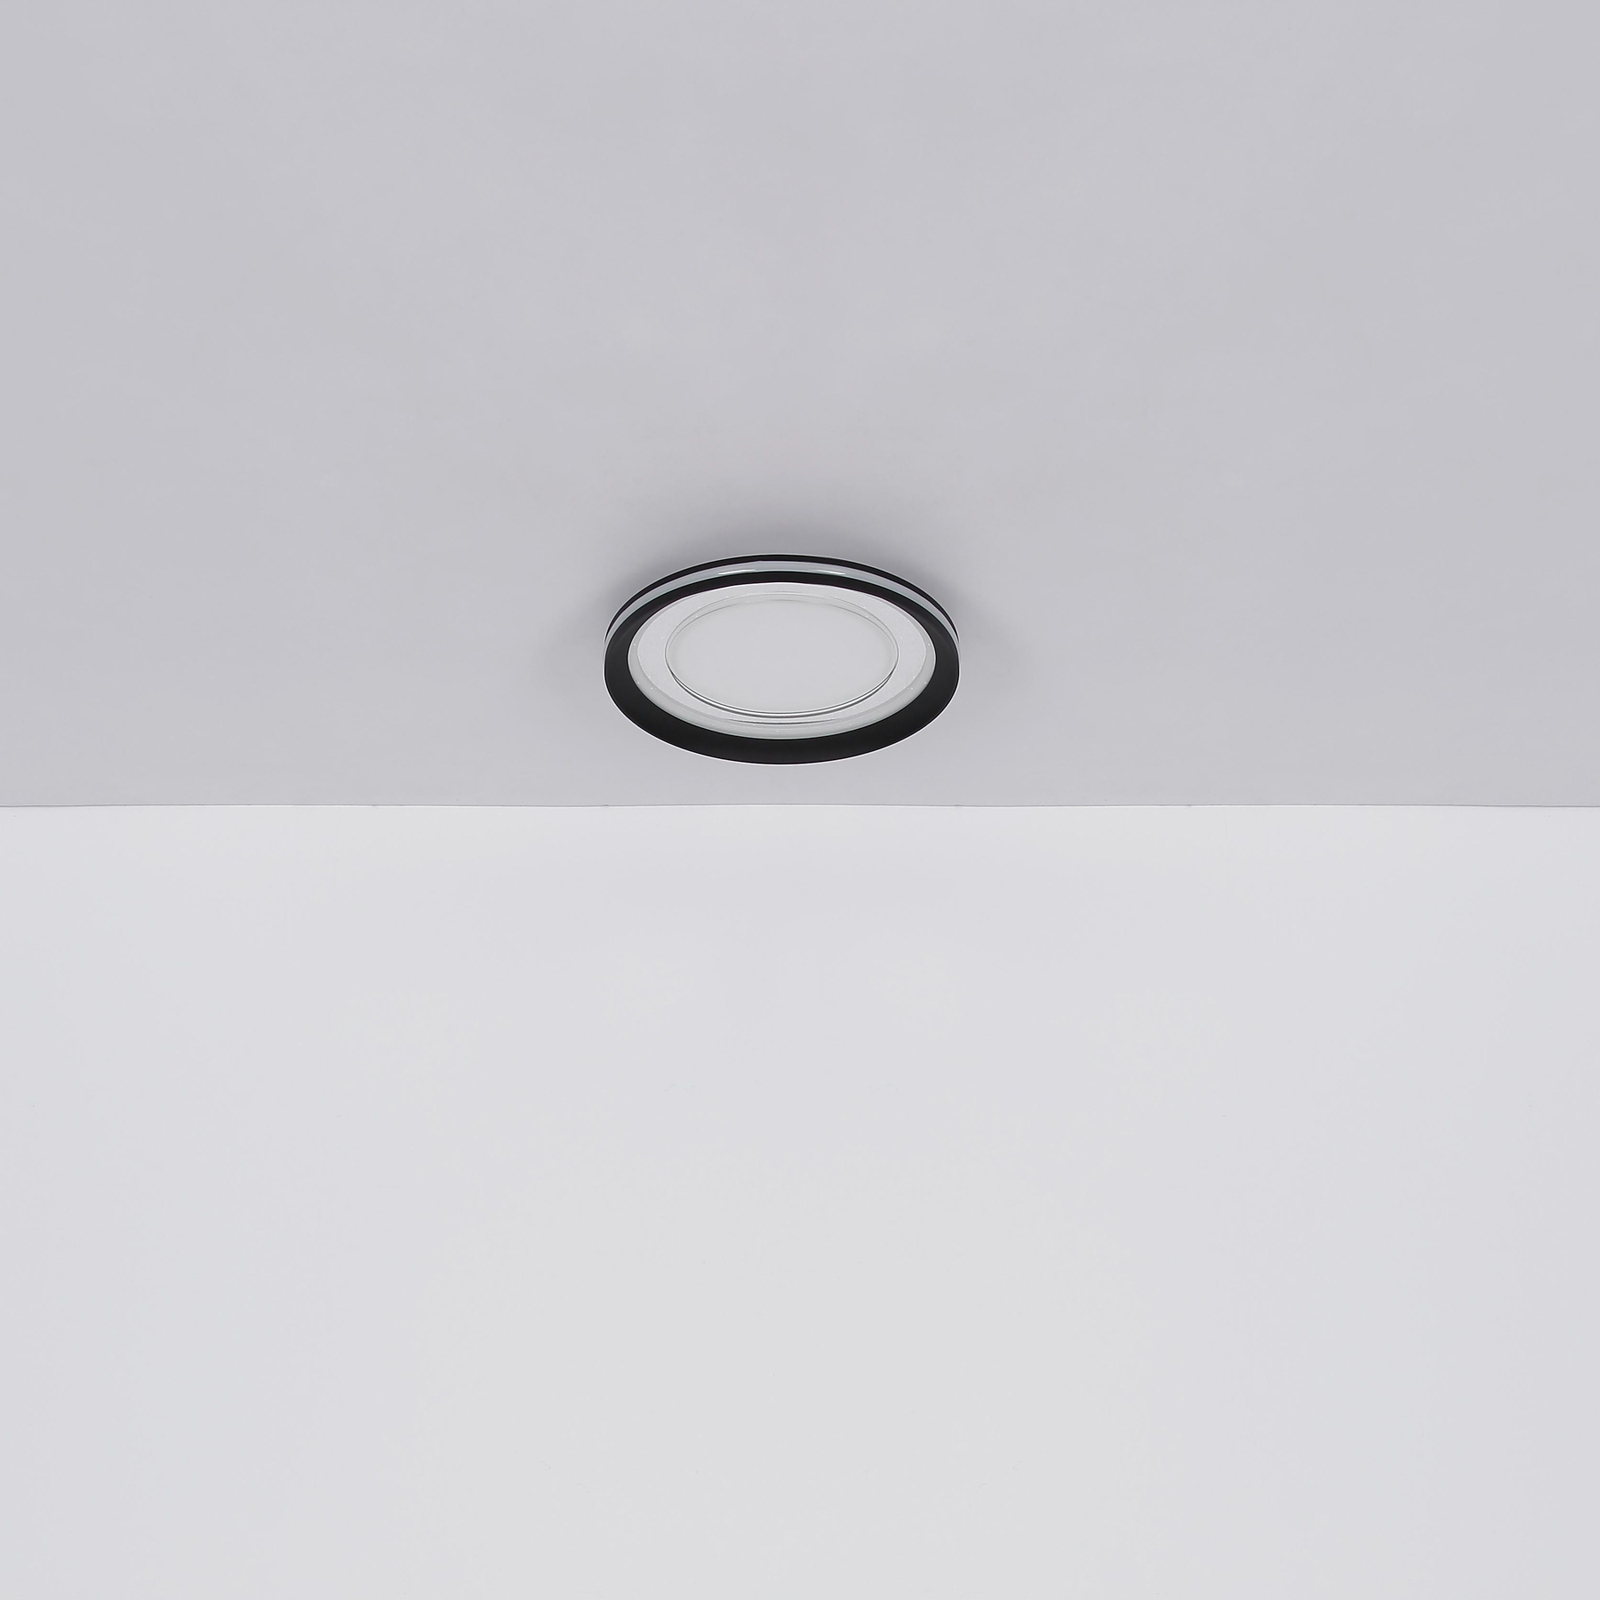 Plafonnier LED Clarino, Ø 36 cm, noir/blanc, acrylique